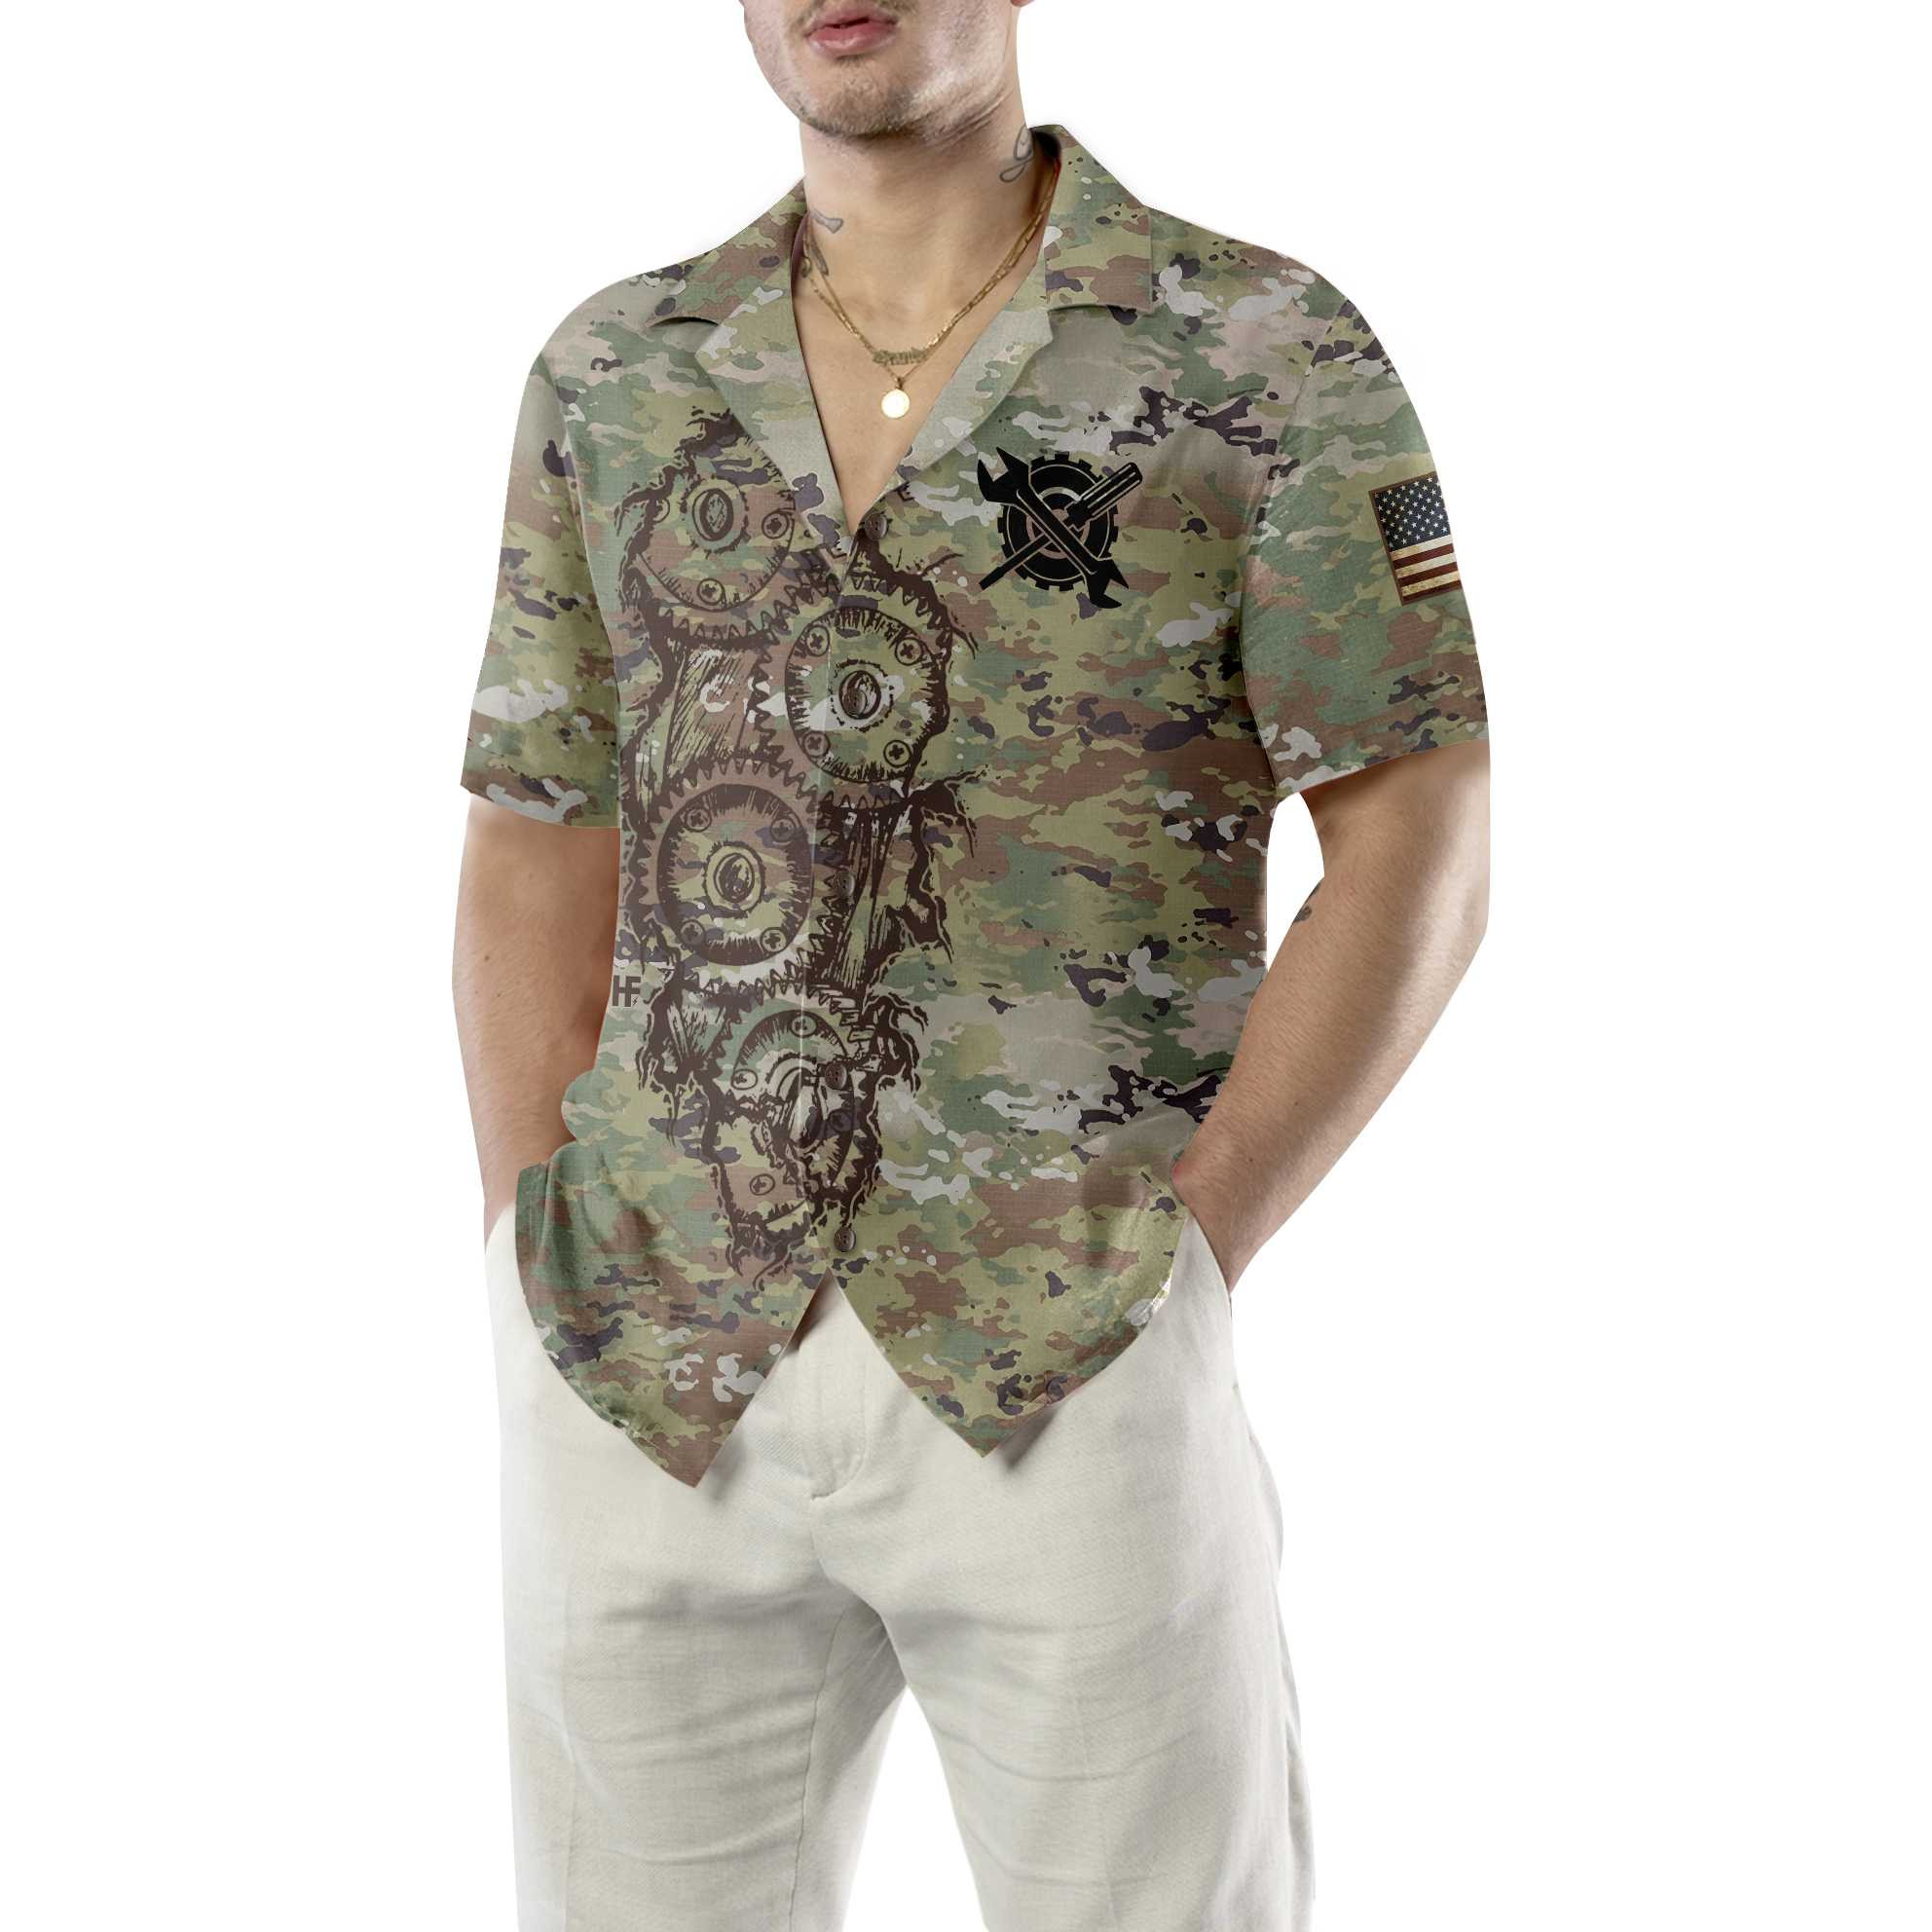 Mechanic Camouflage Hawaiian Shirt, Cool Camo Mechanic Shirt For Men, Best Mechanic Gift